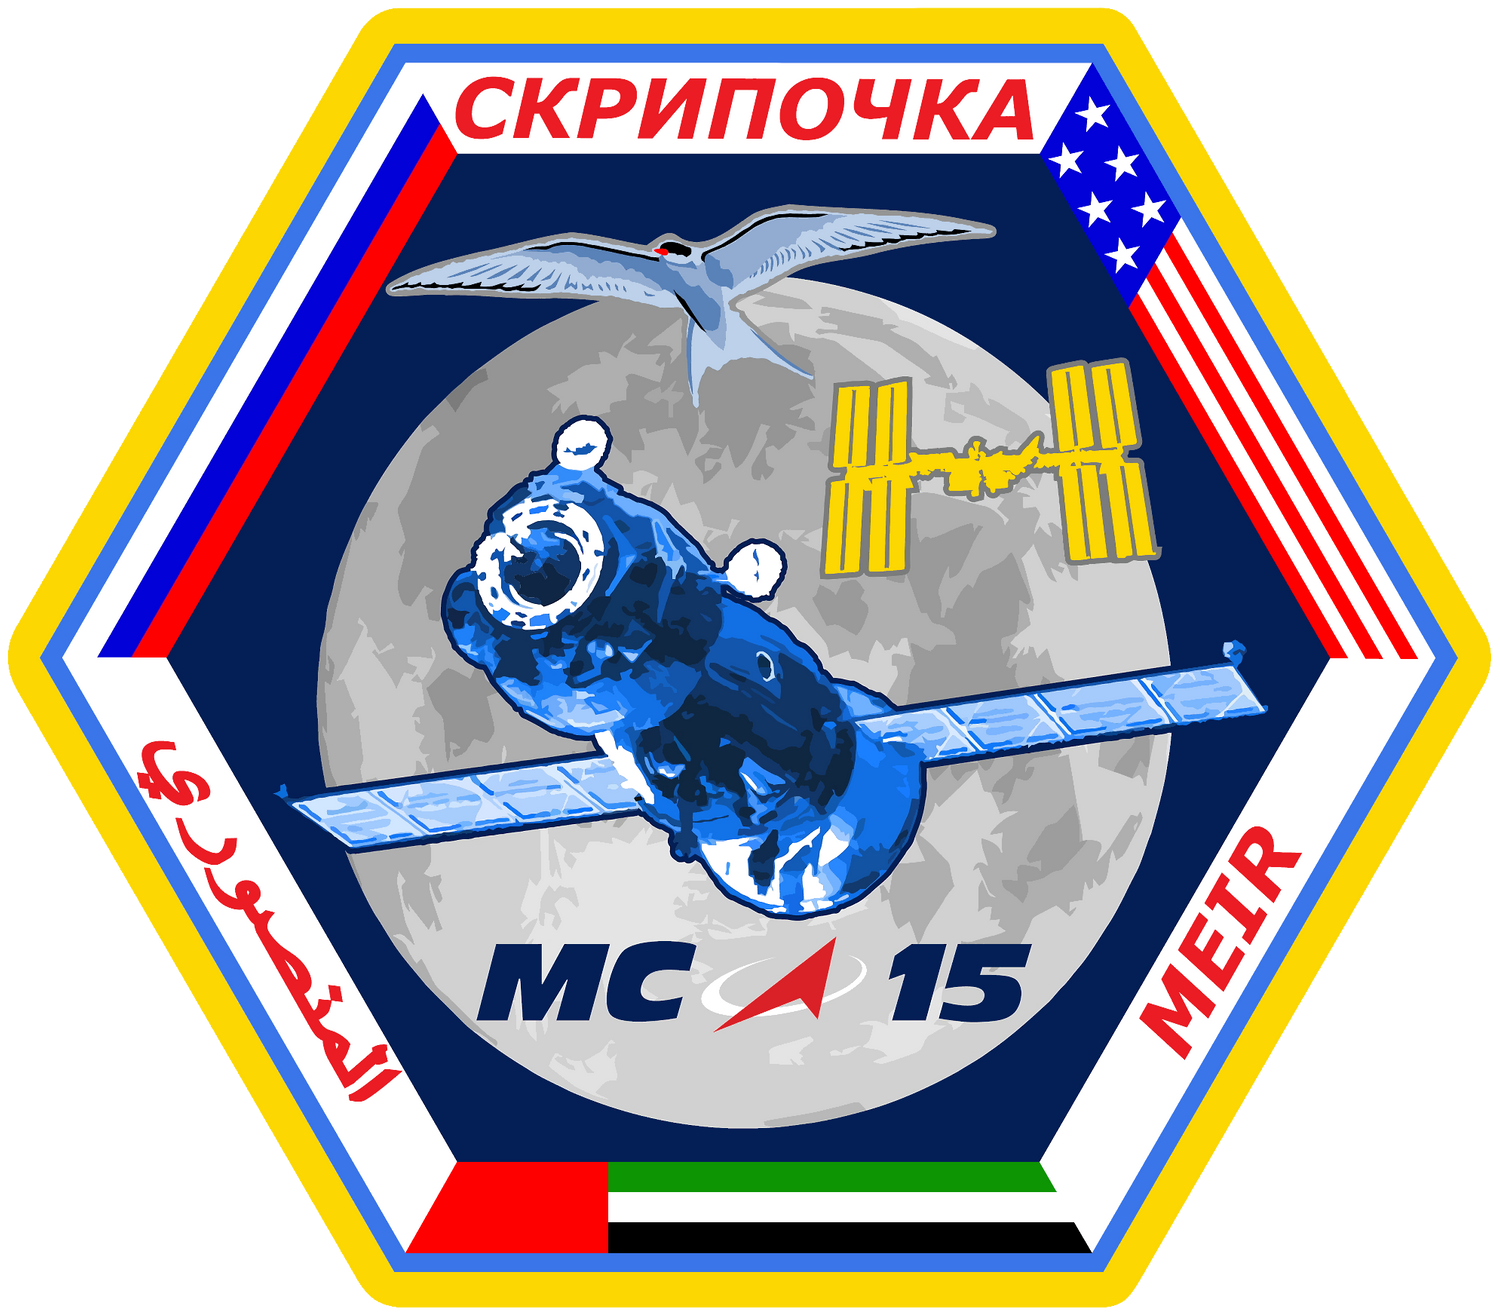 Soyuz MS-15